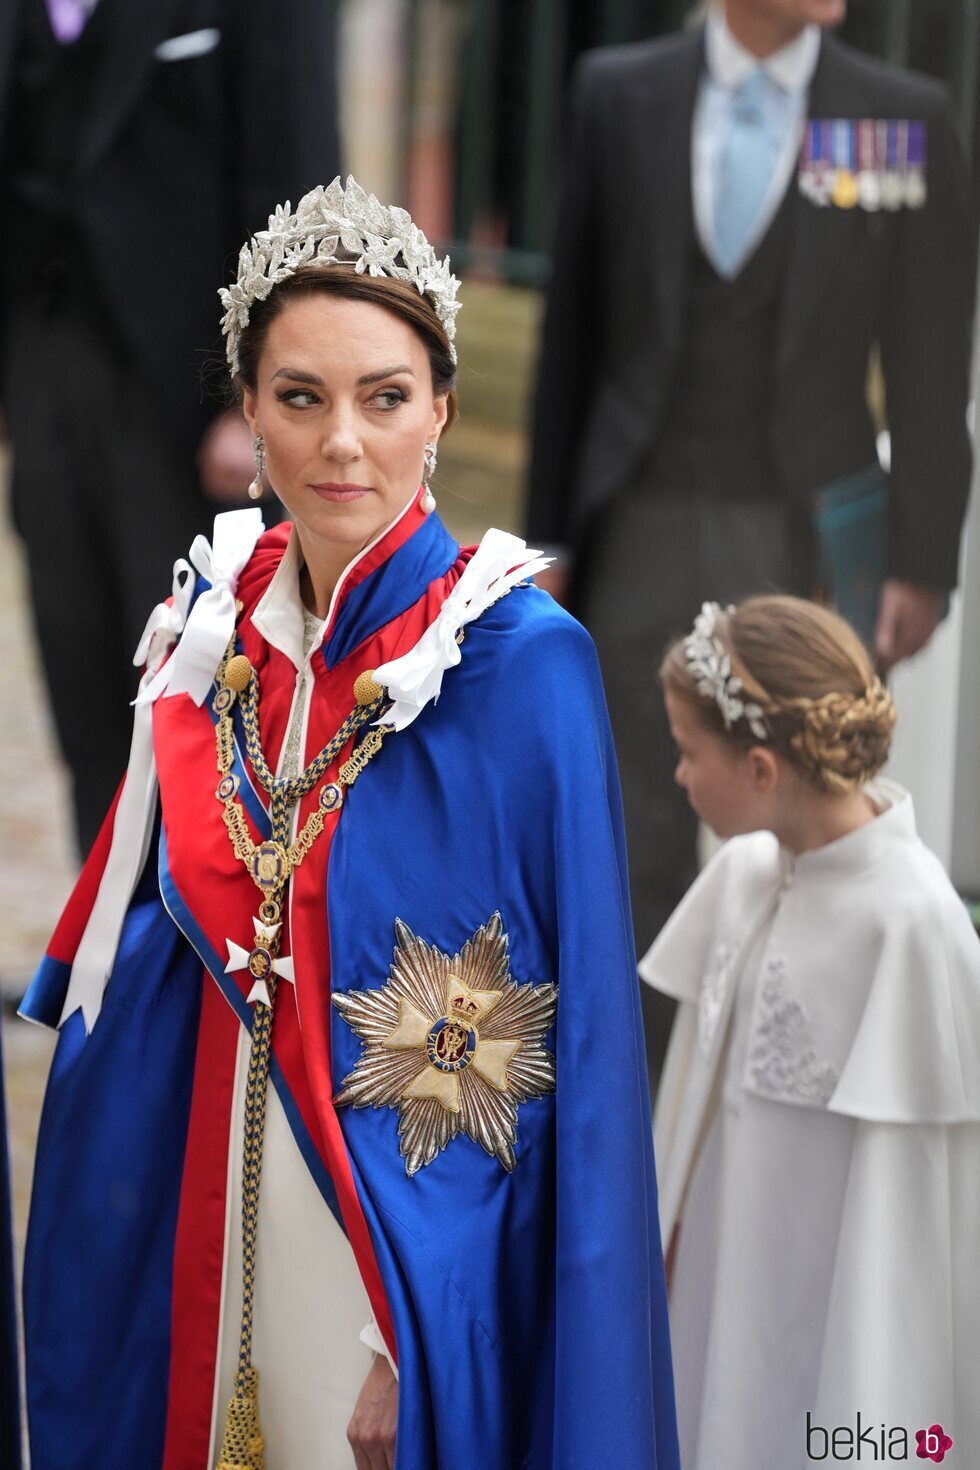 Kate Middleton entrando a la Abadía de Westminster para la Coronación